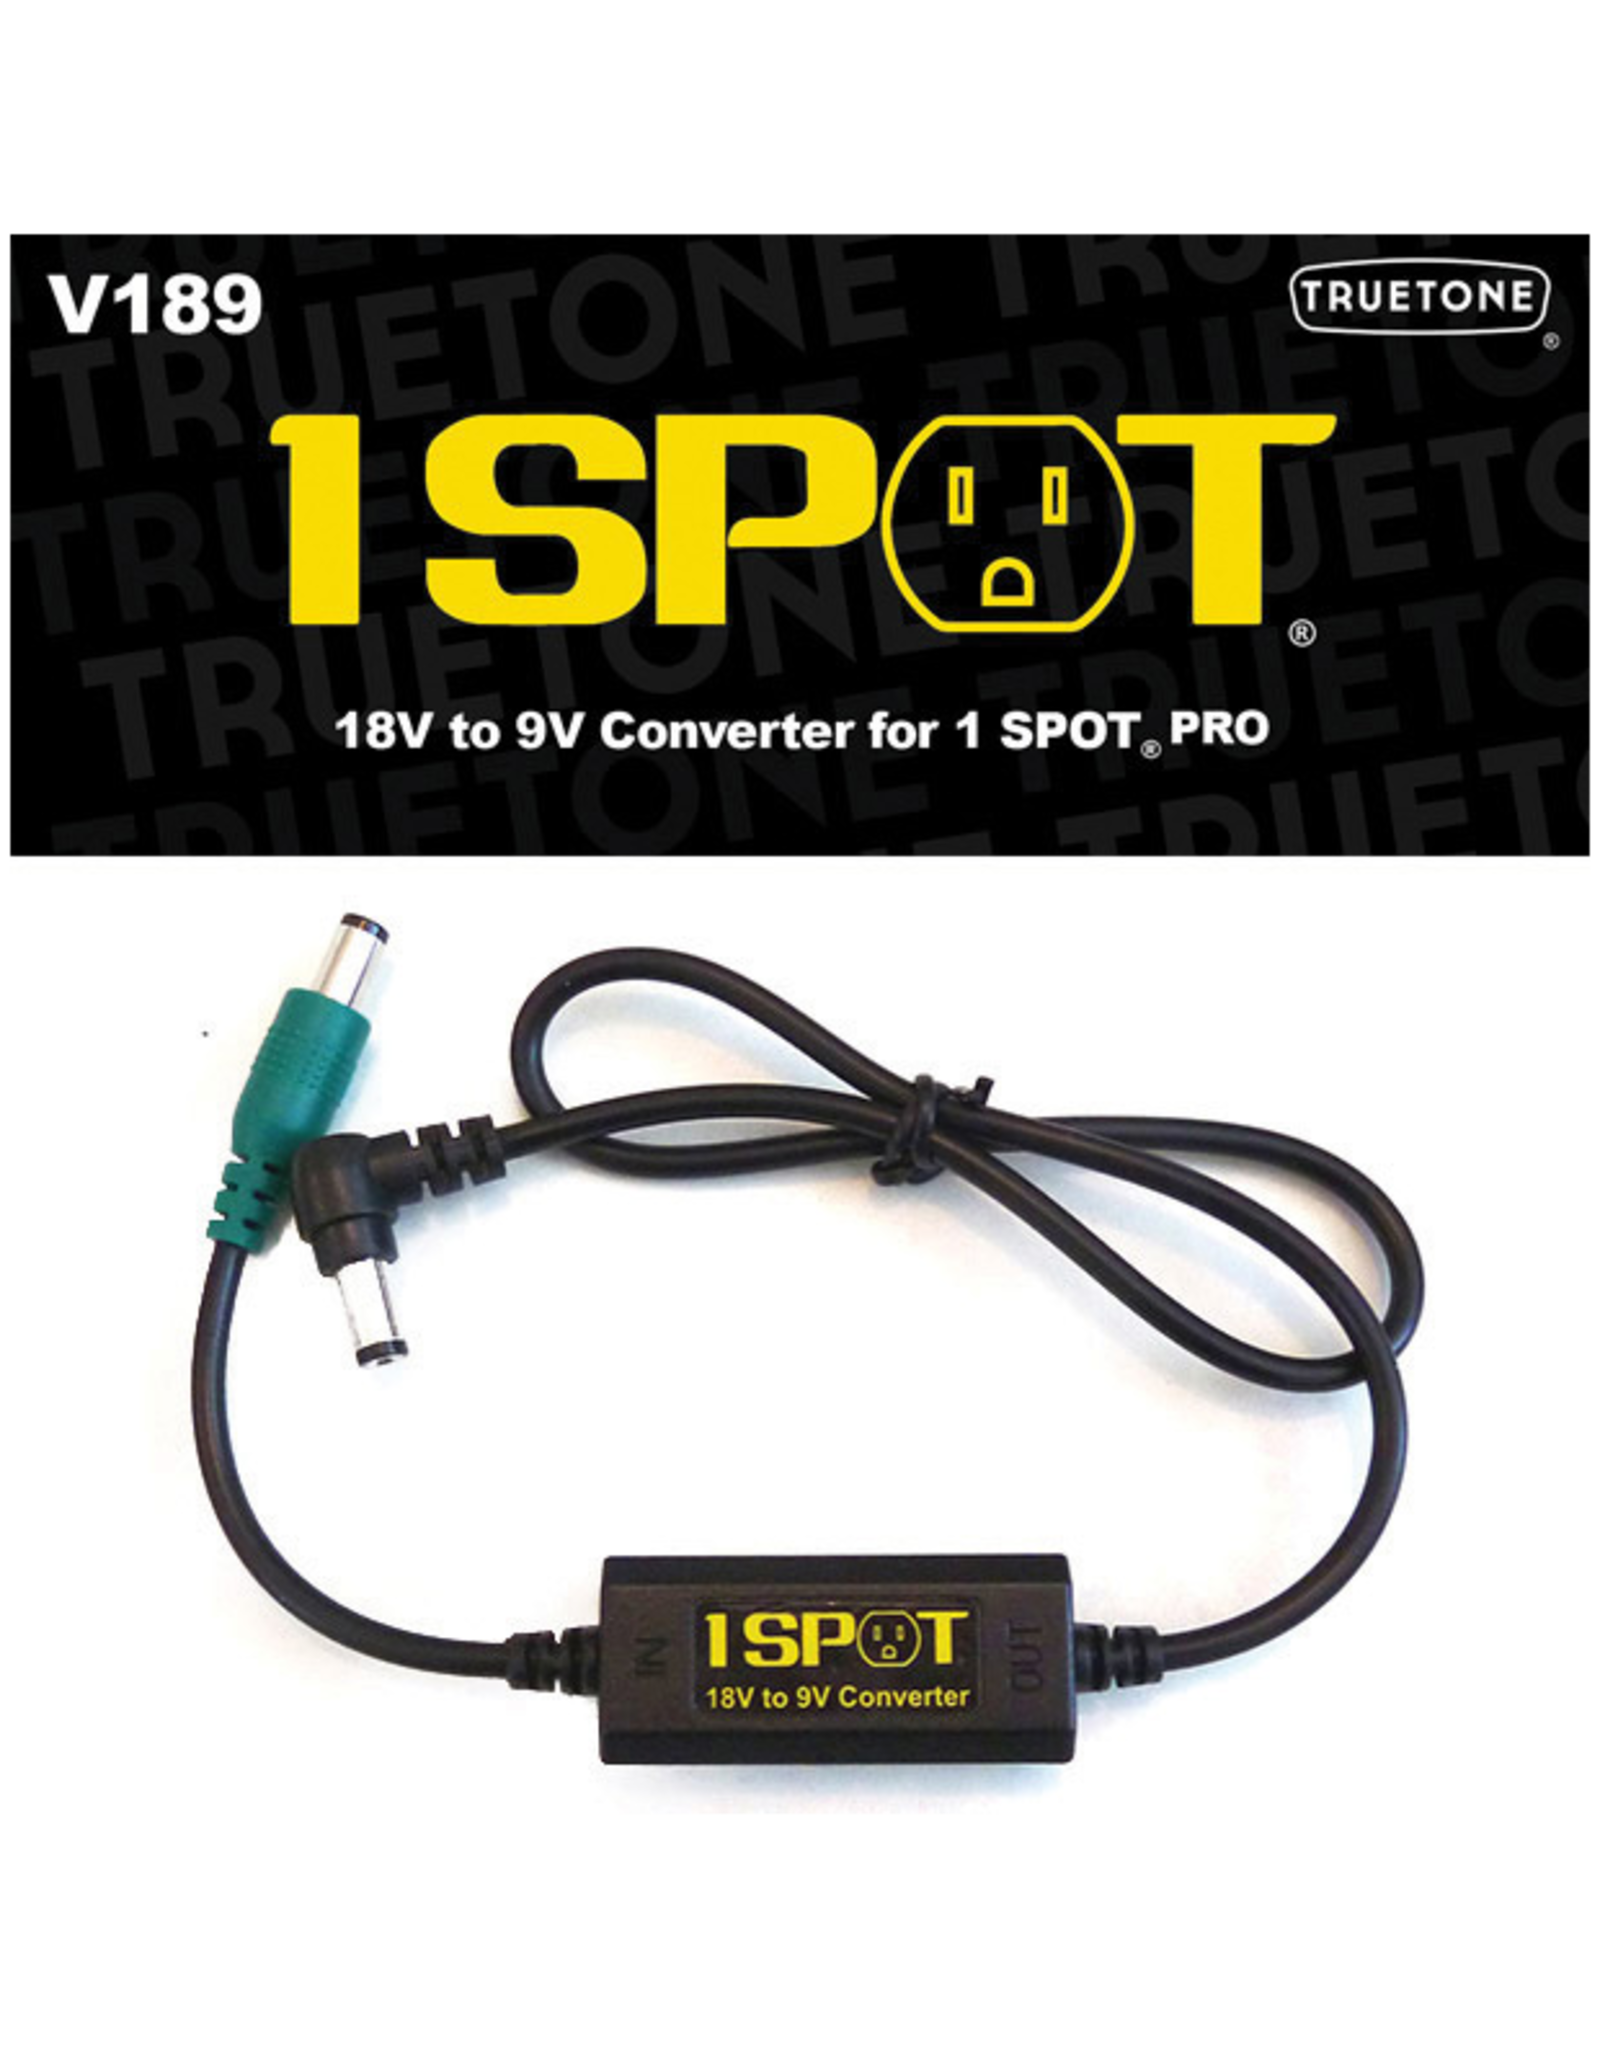 TrueTone True Tone V189 1 Spot 18V to 9V Converter for 1 Spot Pro